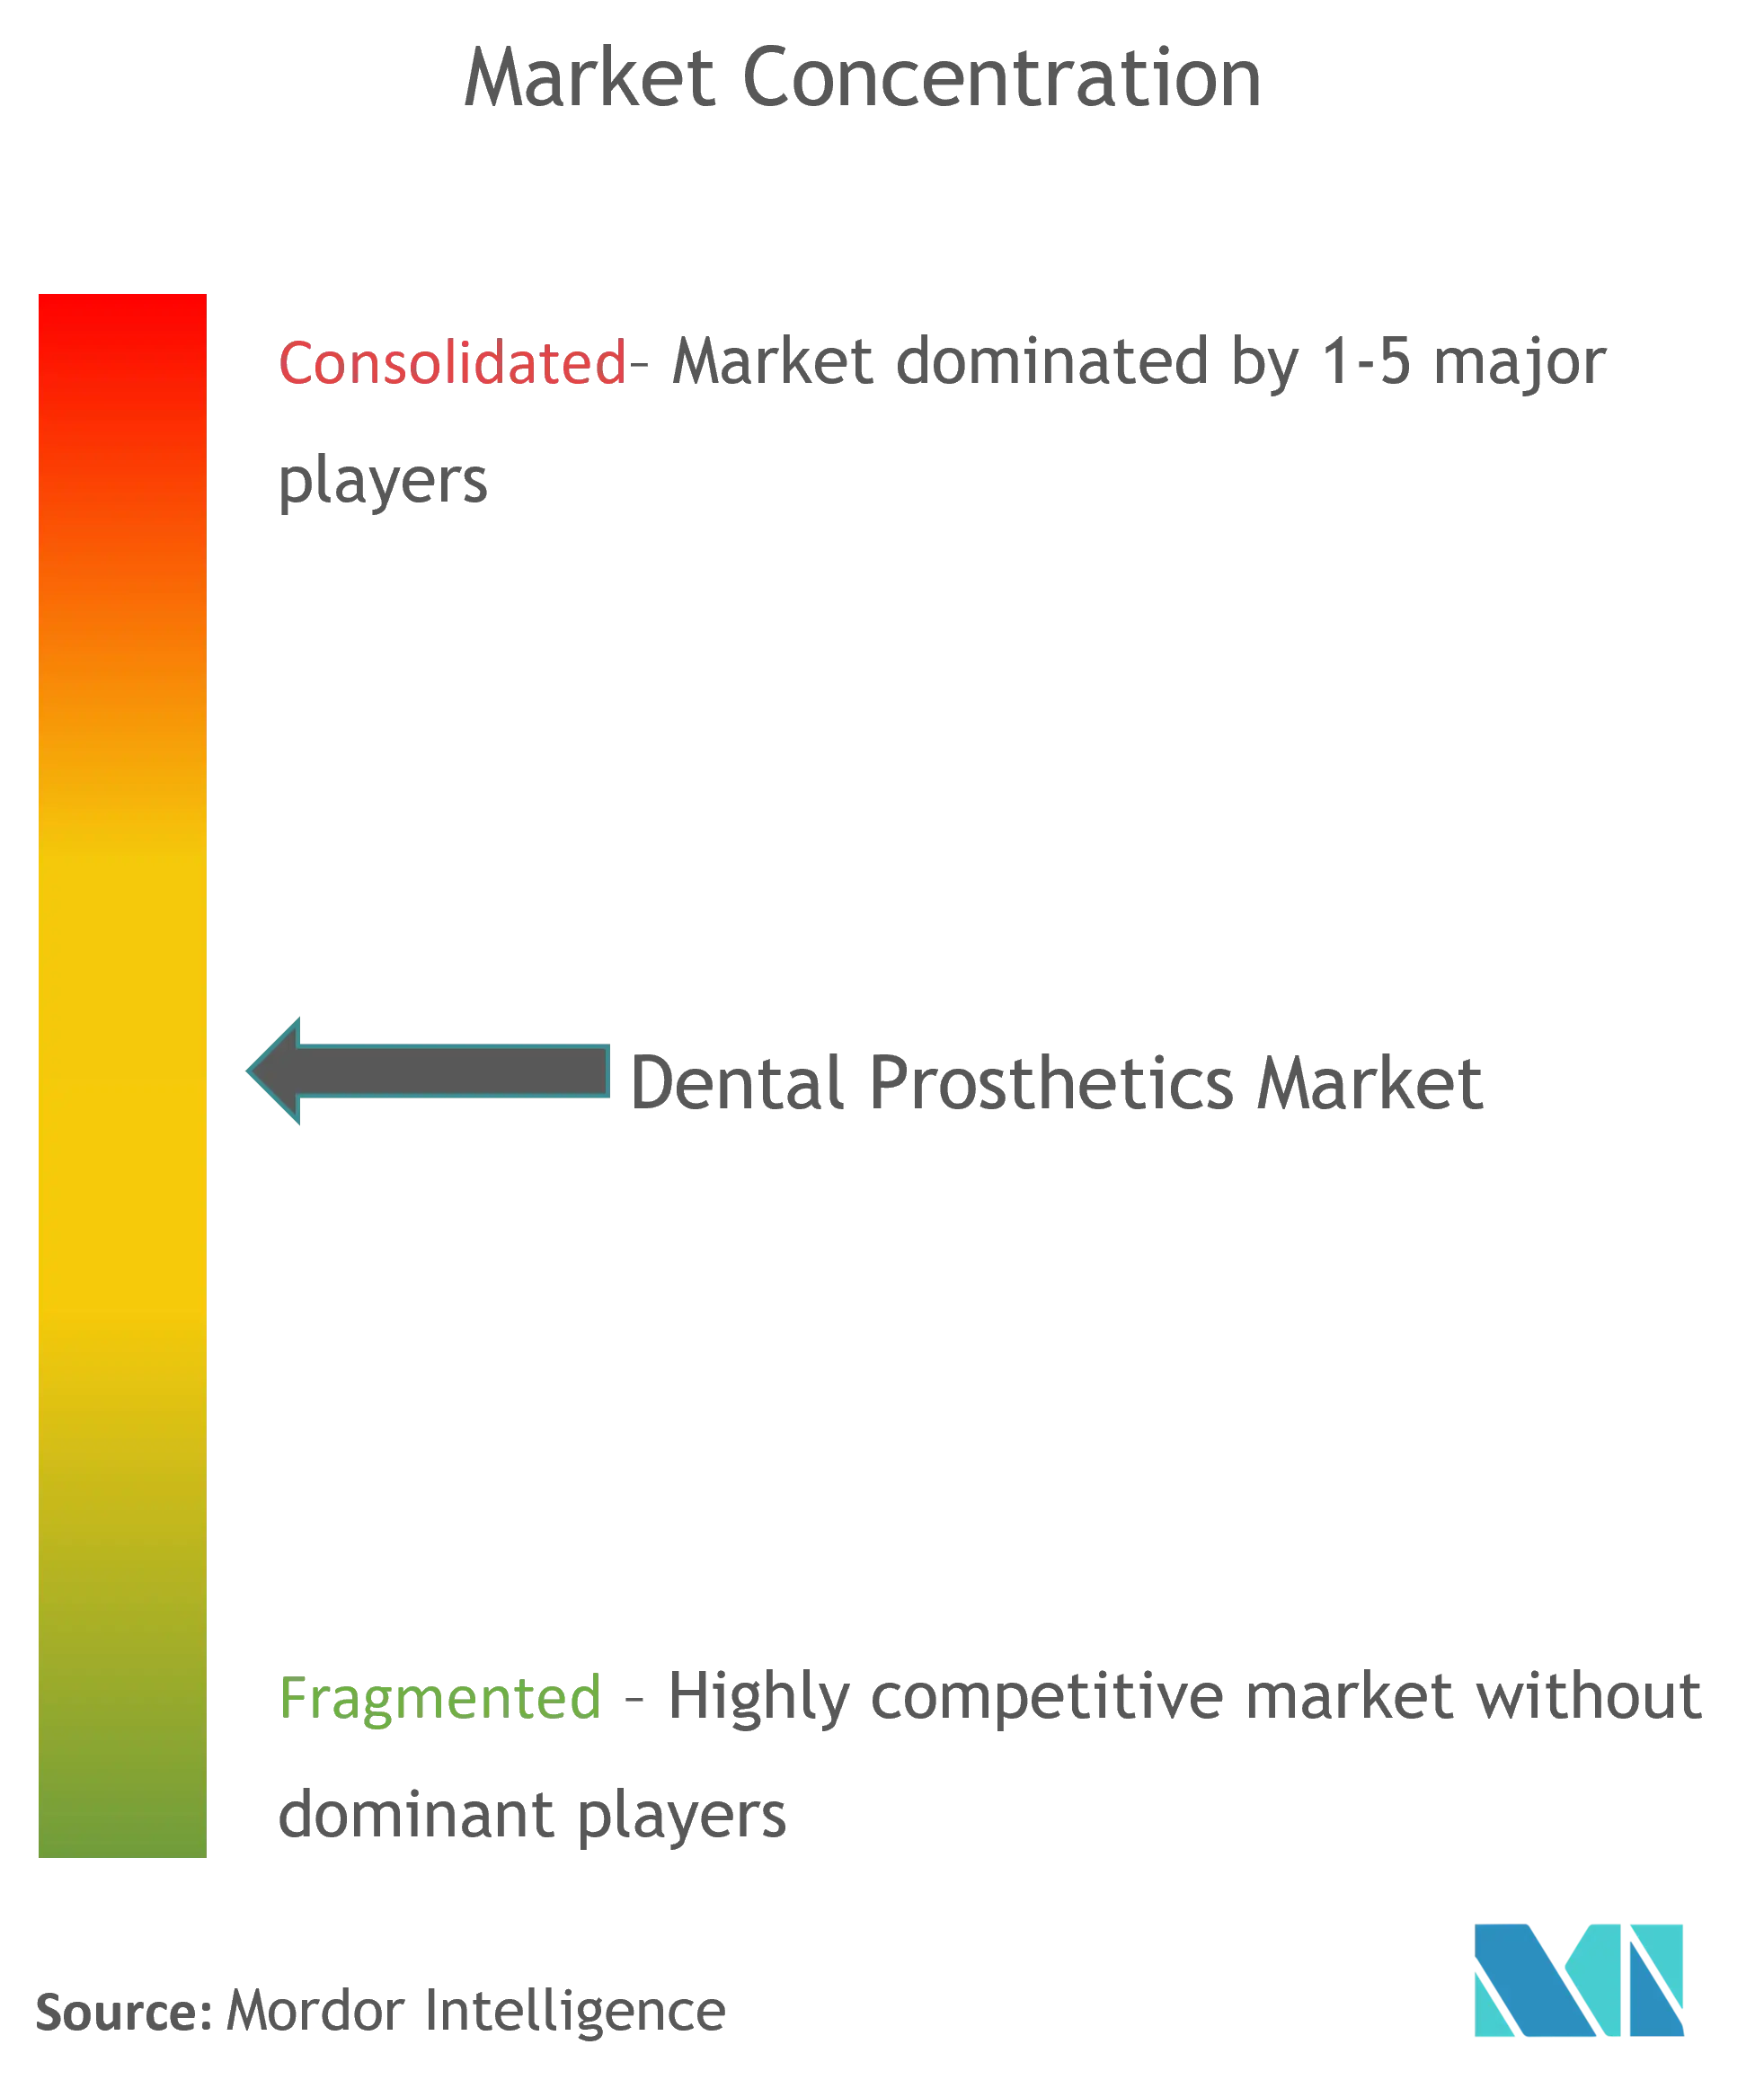 Dental Prosthetics Market Concentration